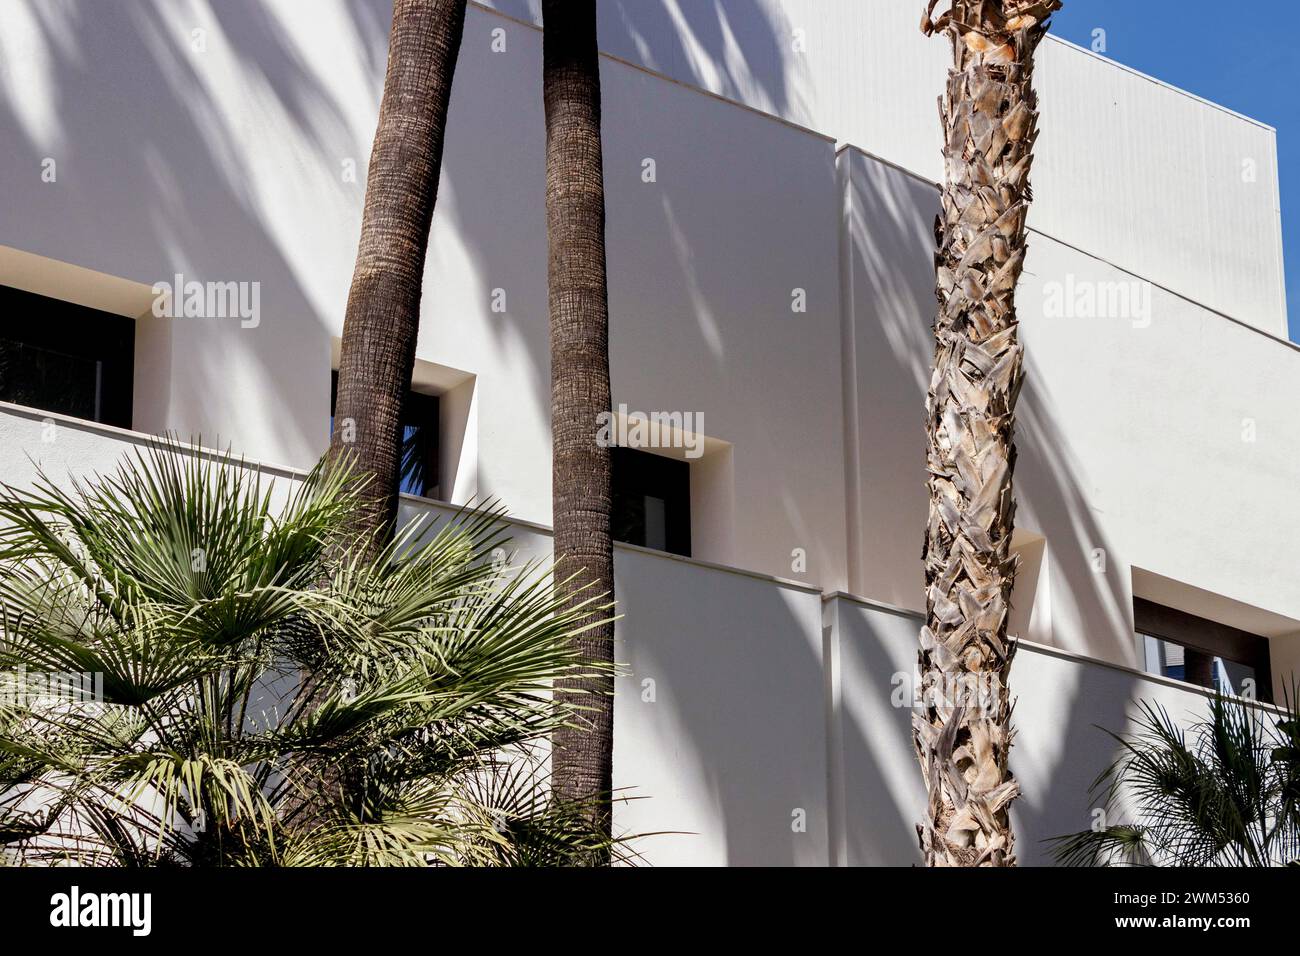 Mur extérieur blanc du bâtiment du musée Picasso à Malaga, Espagne Banque D'Images